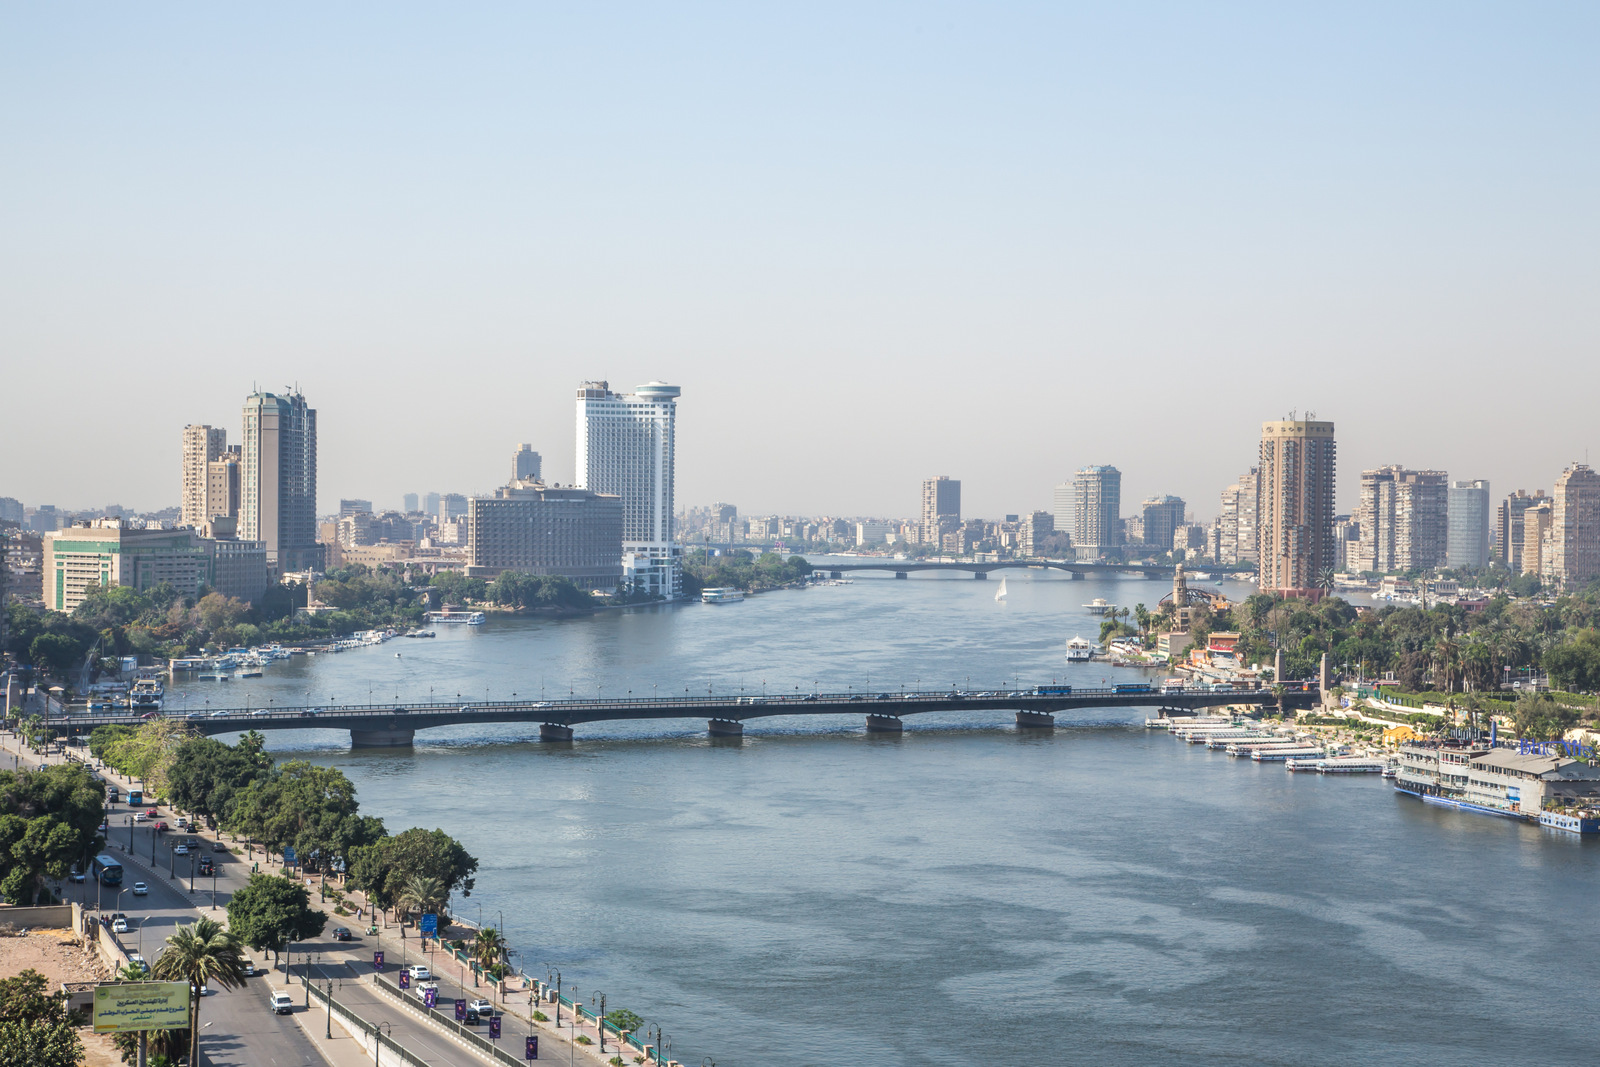 Египет ввел в аэропорту Каира бесплатные транзитные визы для туристов, в том числе российских